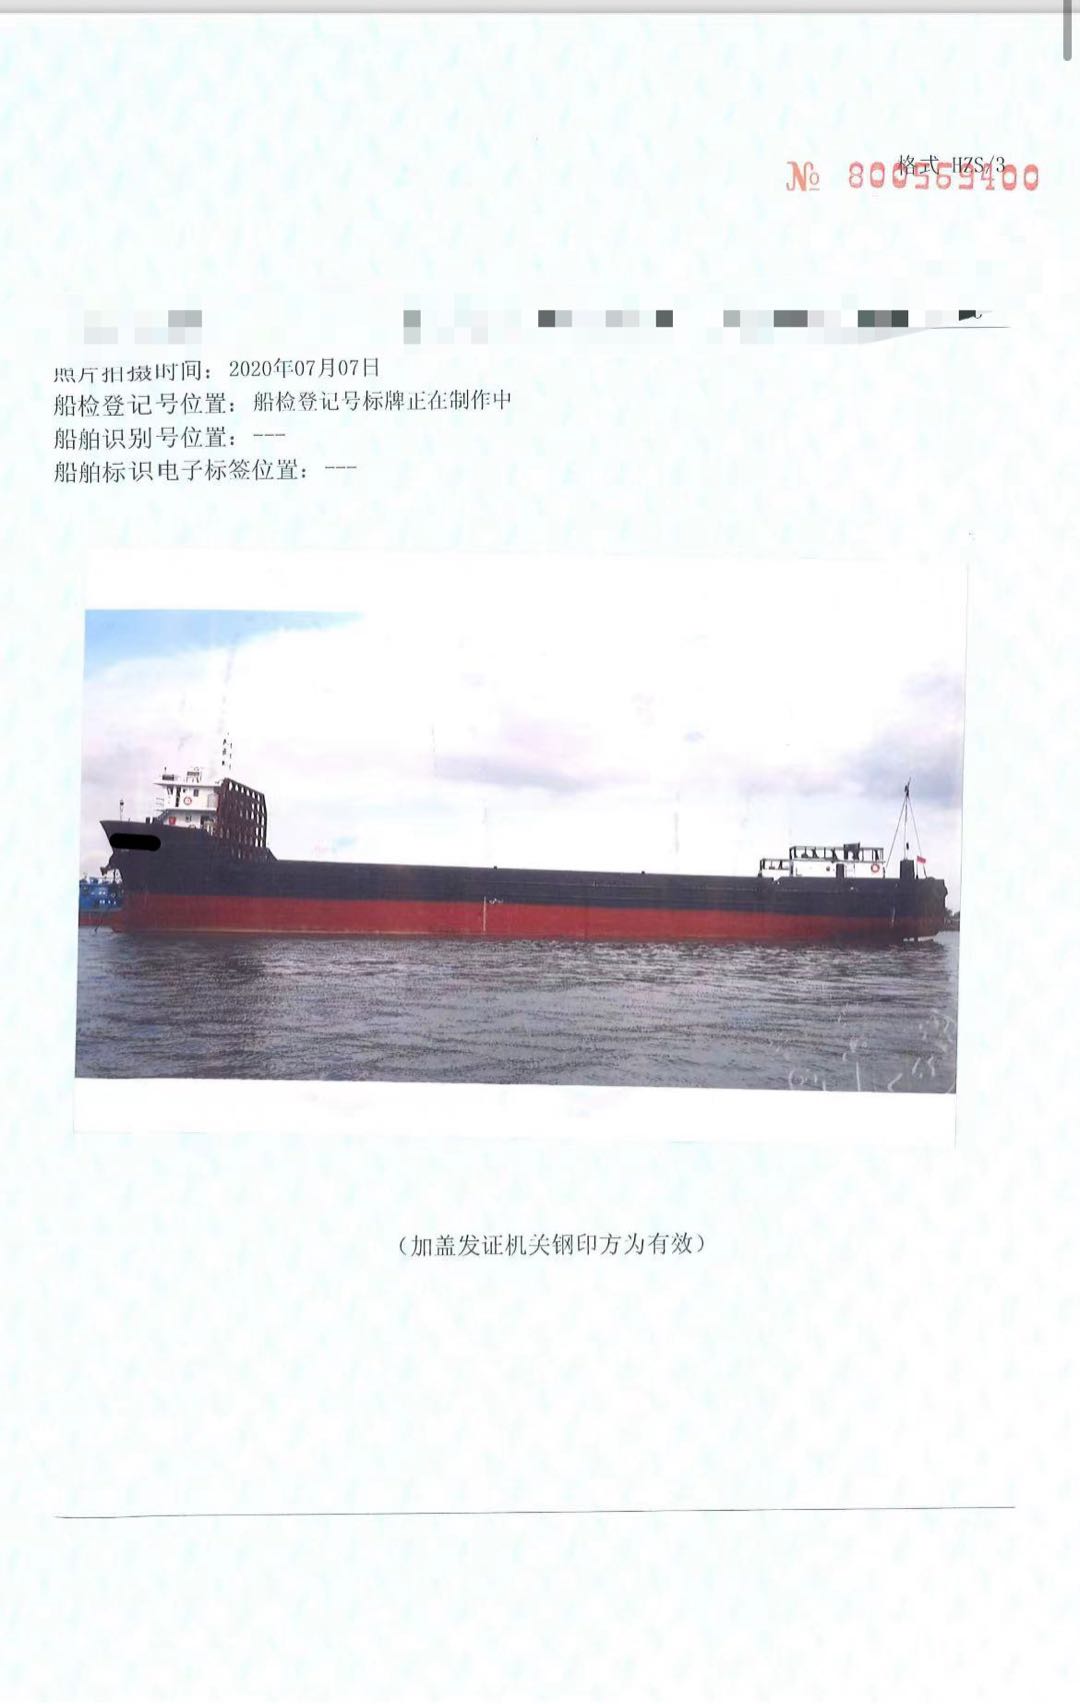 出售2850吨集装箱船